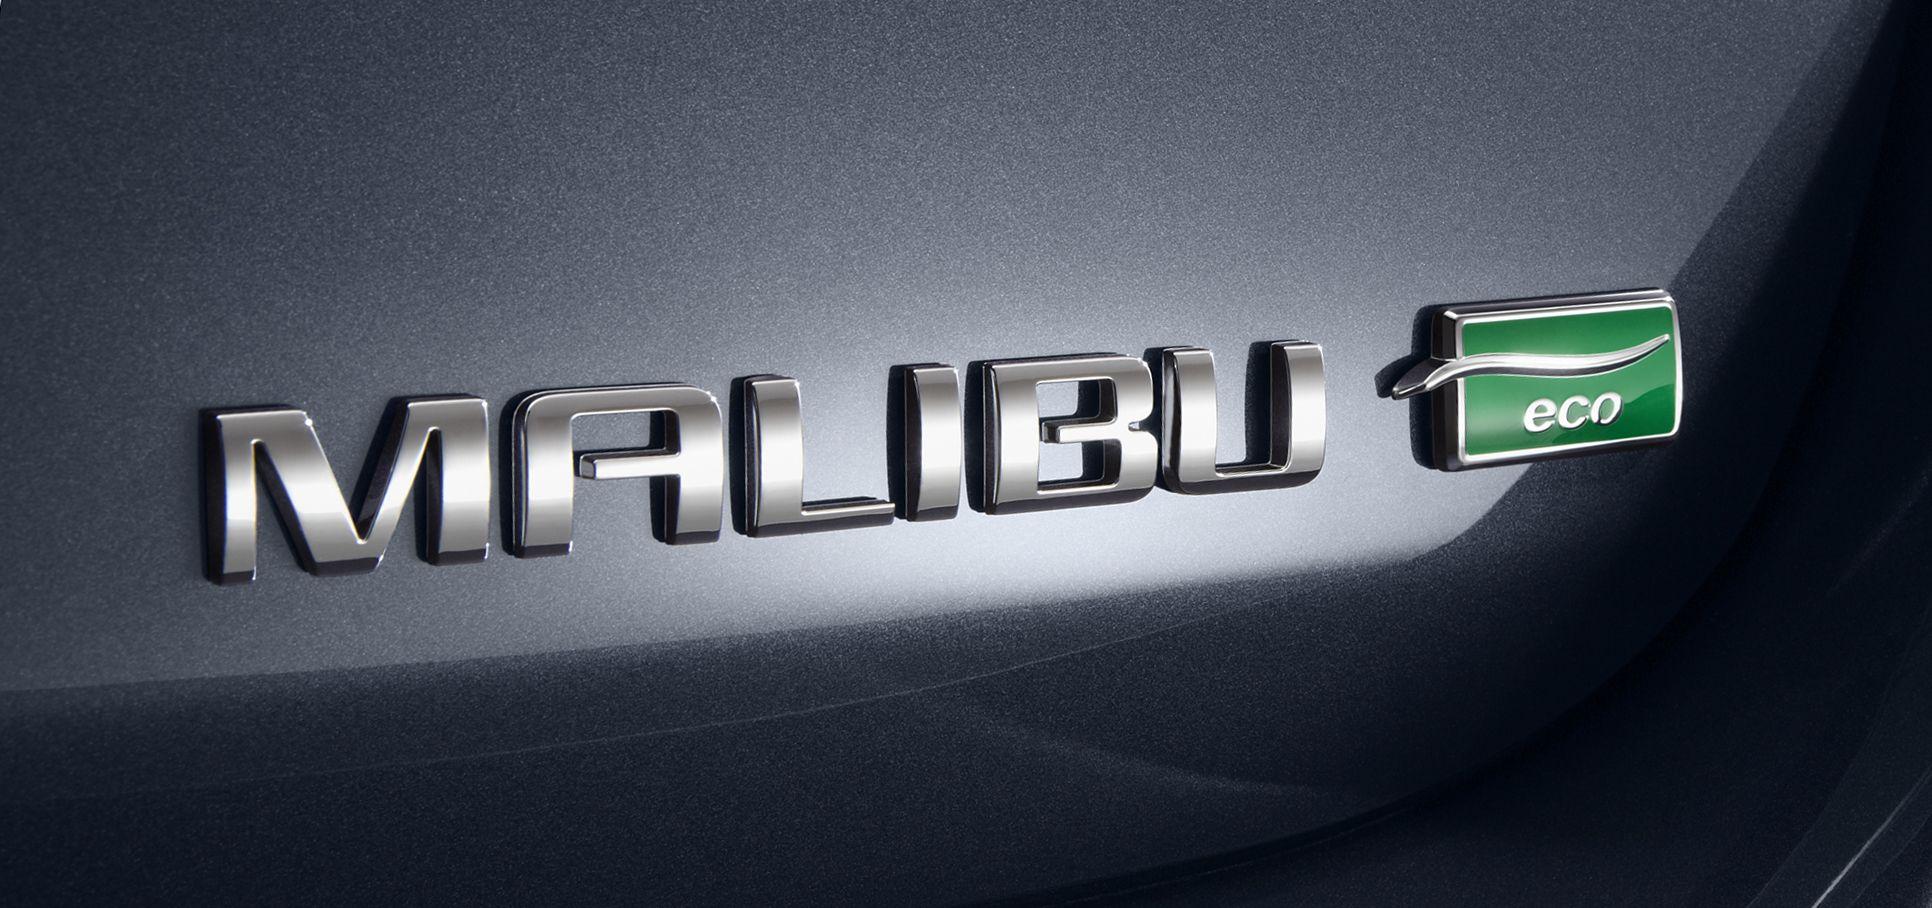 Chevrolet Malibu Logo - Chevrolet Malibu ECO : 2013 | Cartype